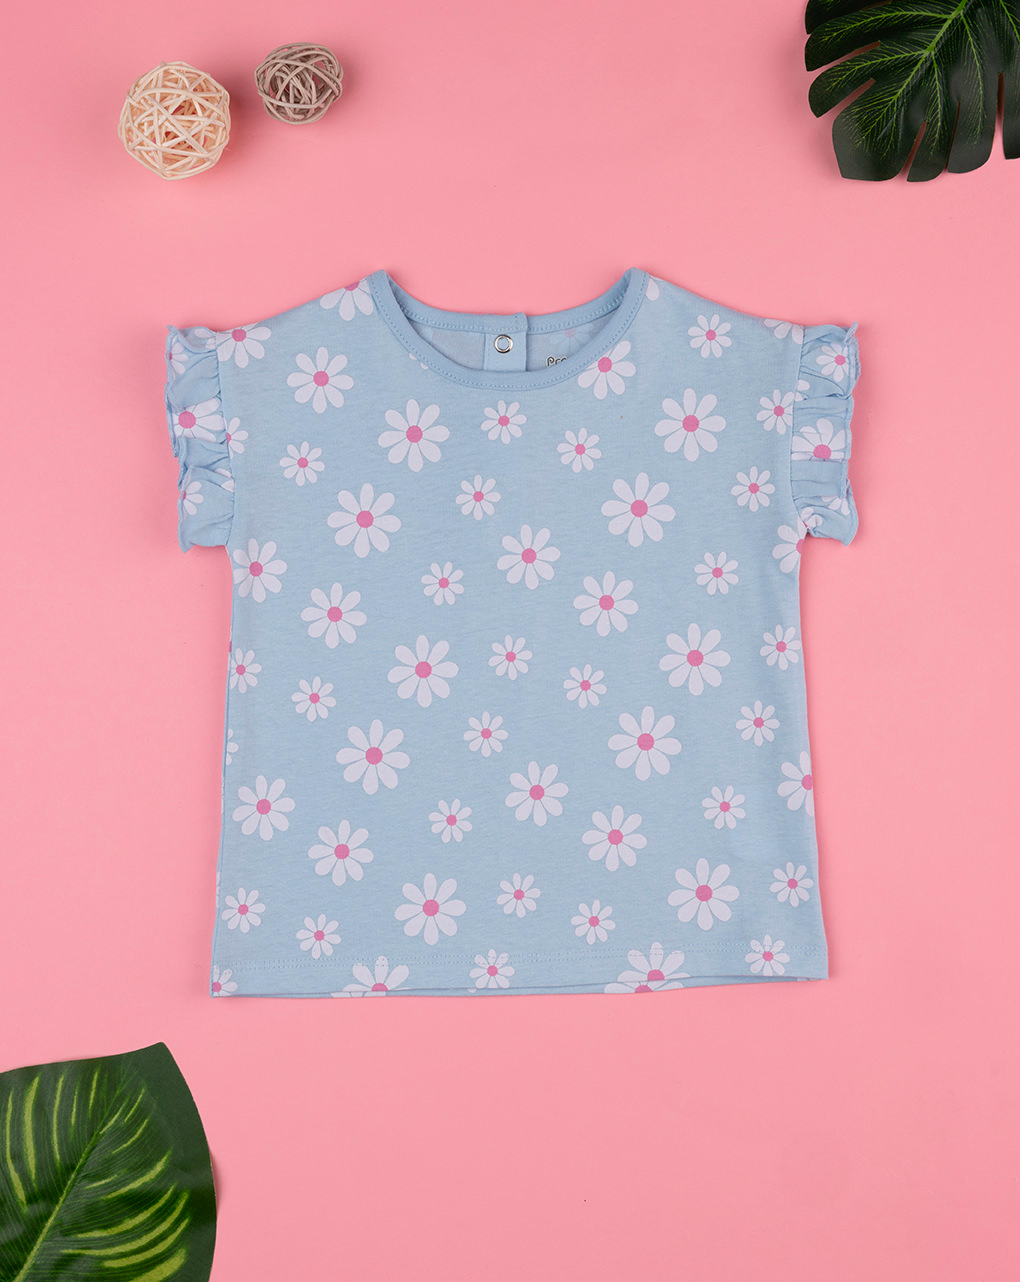 βρεφικό t-shirt γαλαζιο με μαργαρίτες για κορίτσι